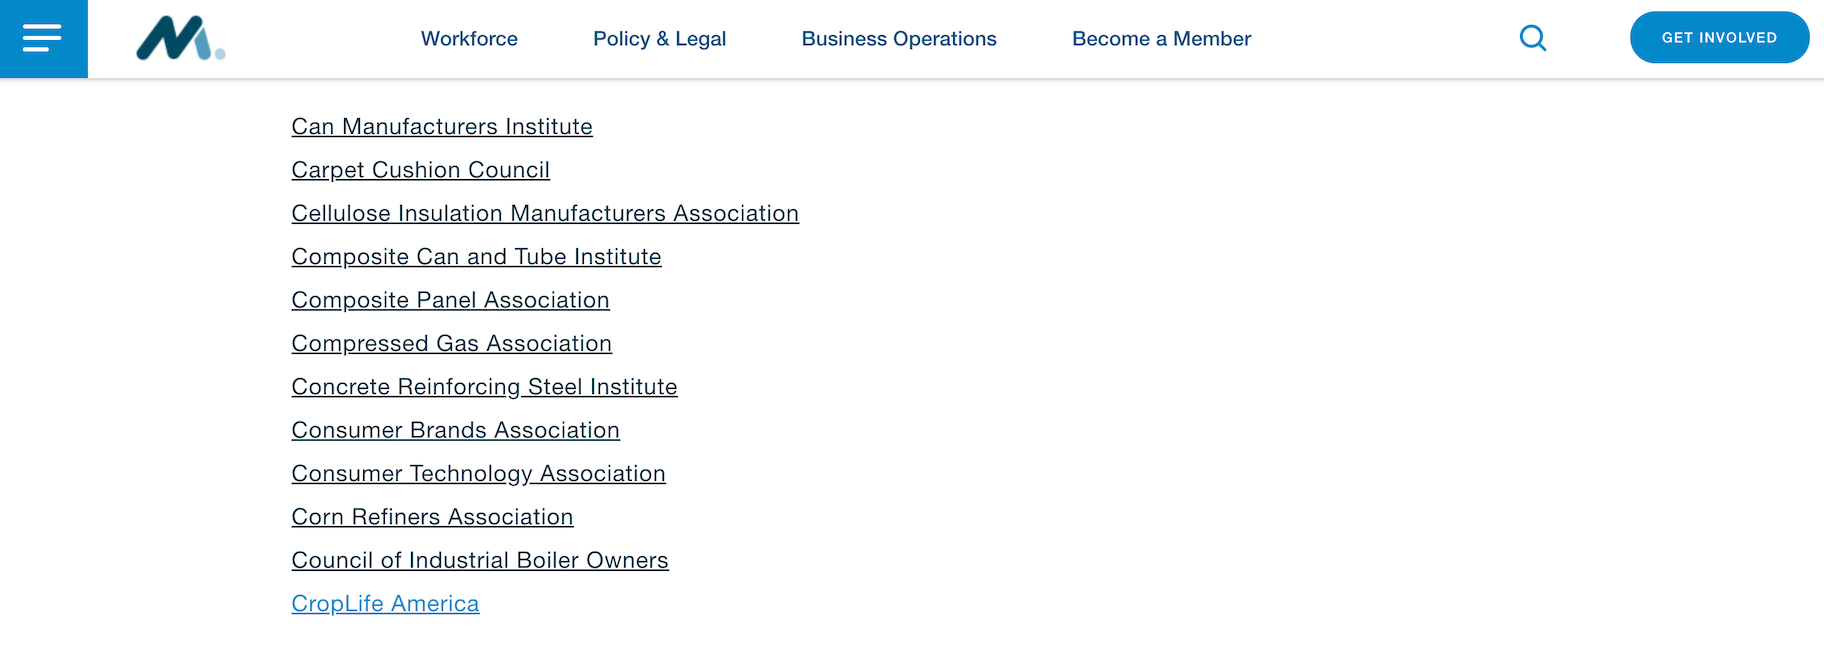 Organizaciones miembros del Consejo de Asociaciones de Manufactura